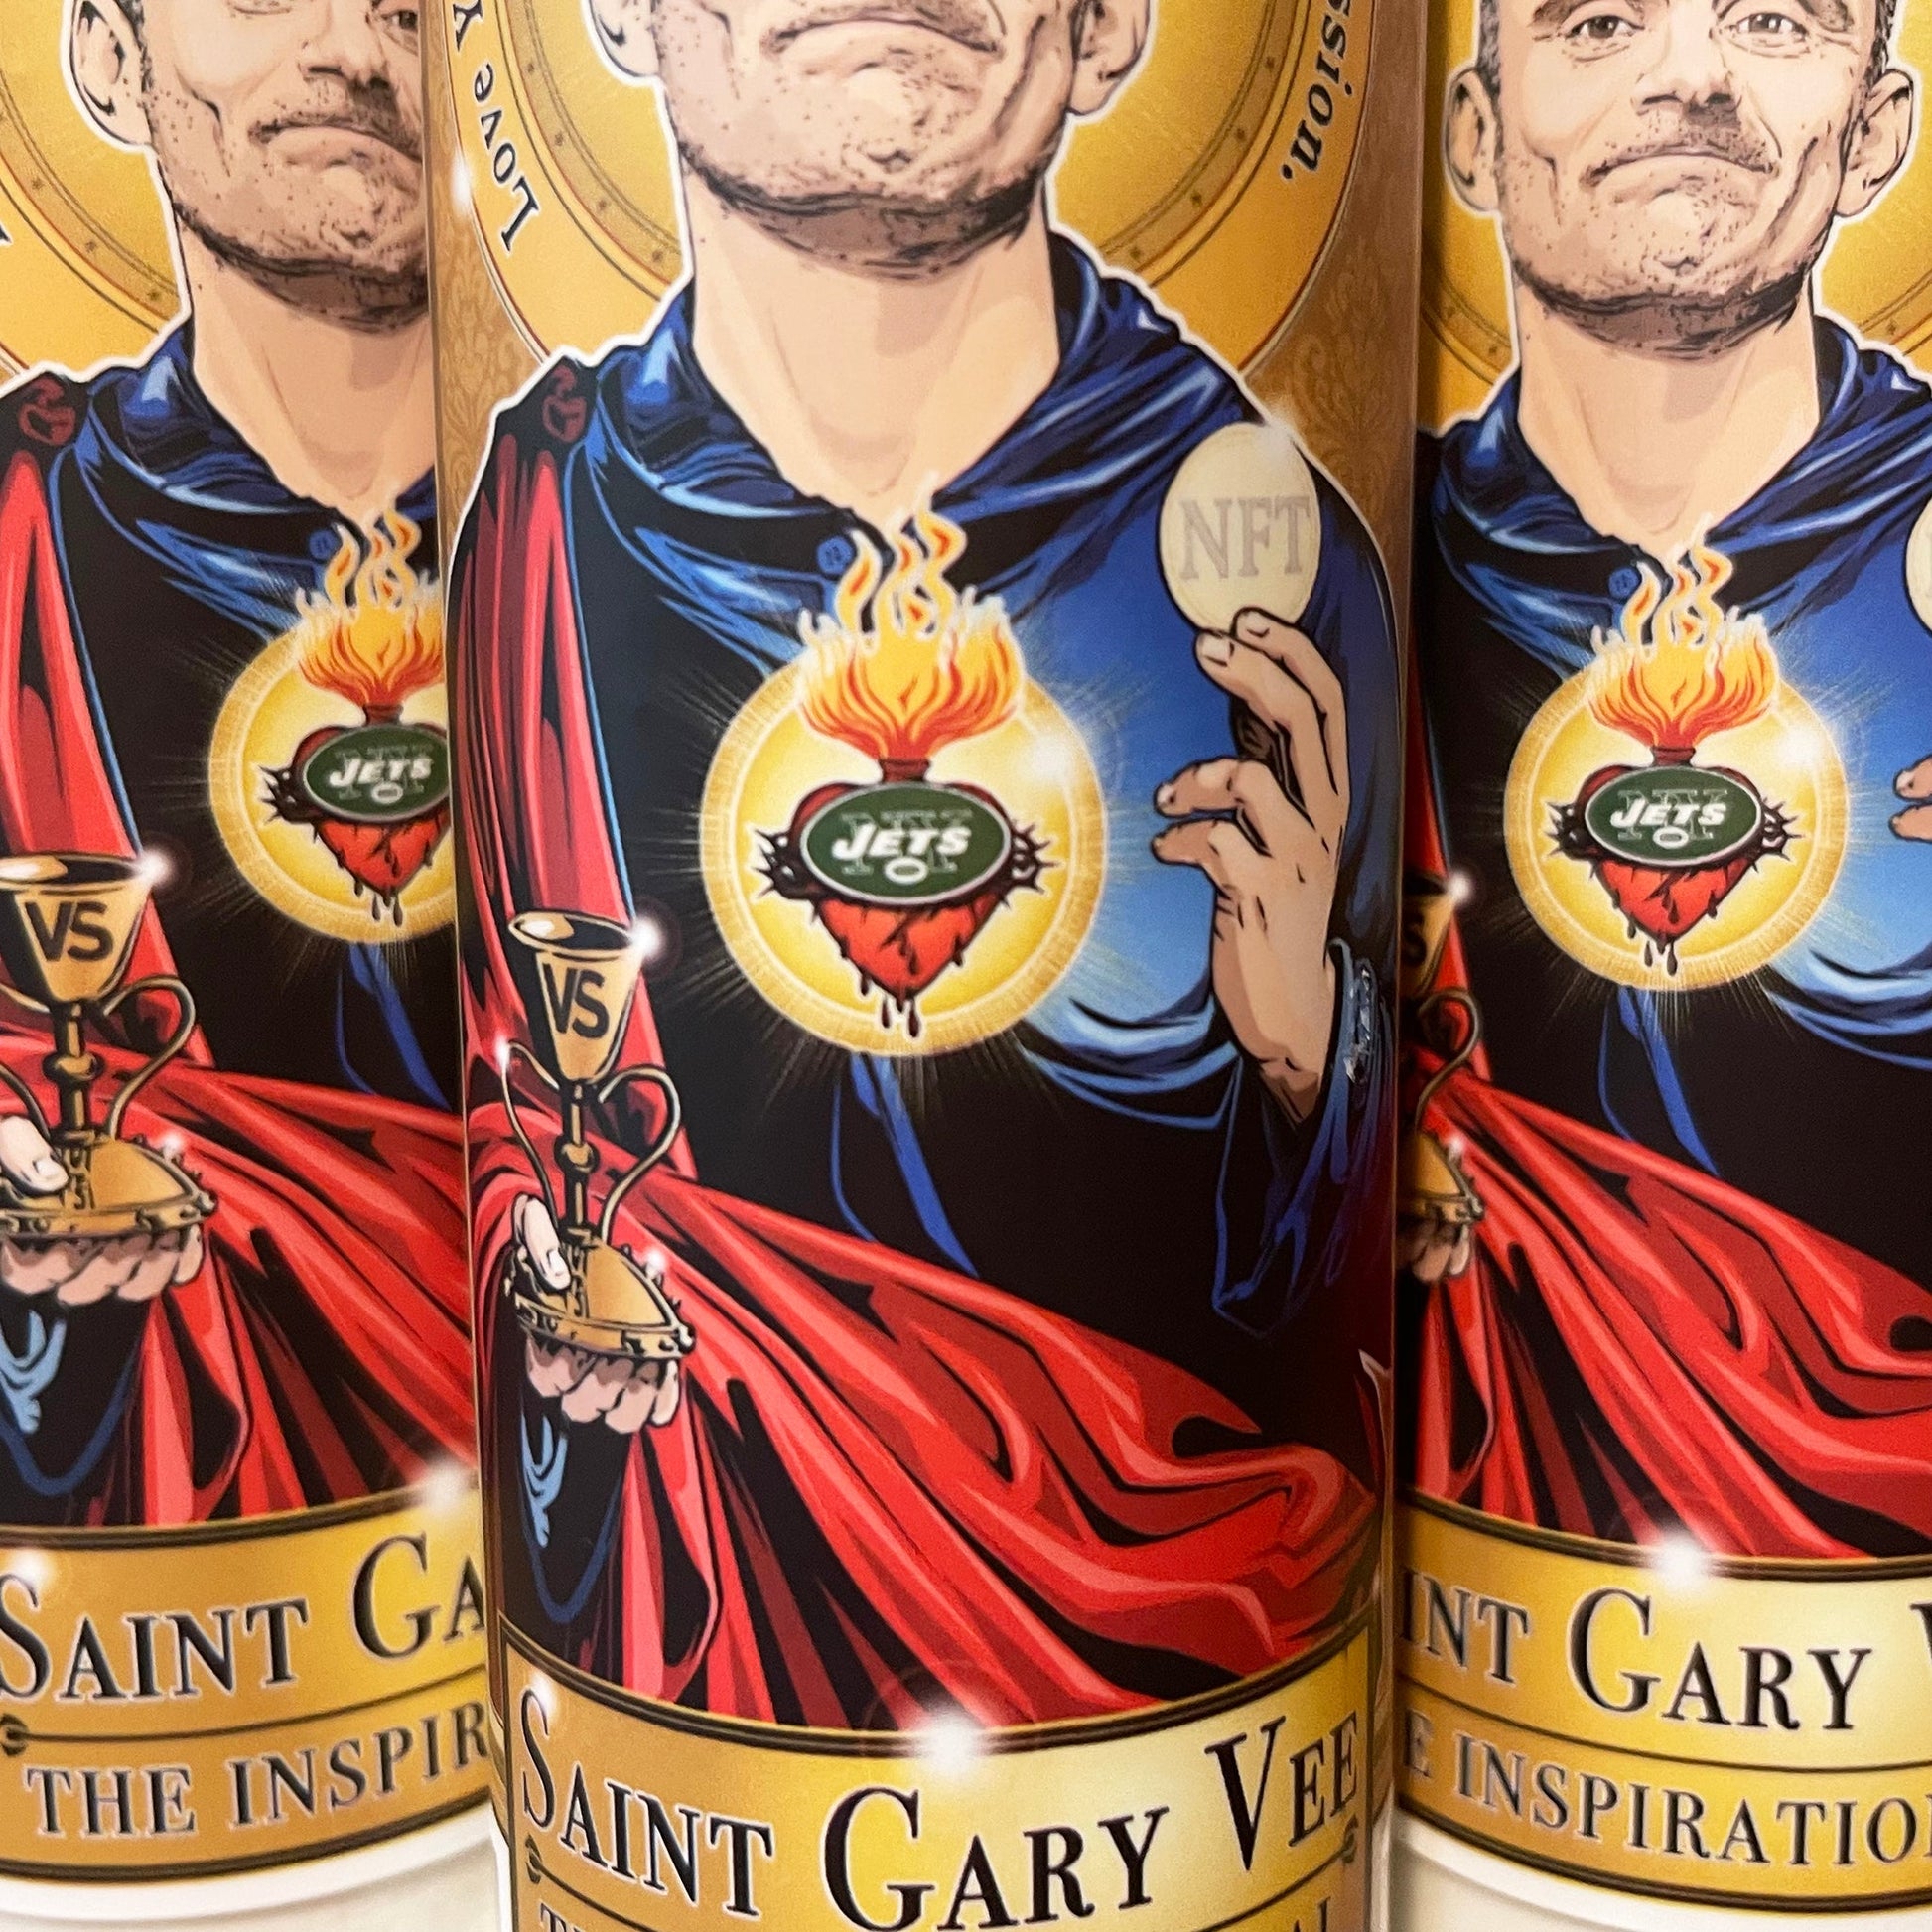 Saint Gary Vee The Inspirational Candle Cleaverandblade.com